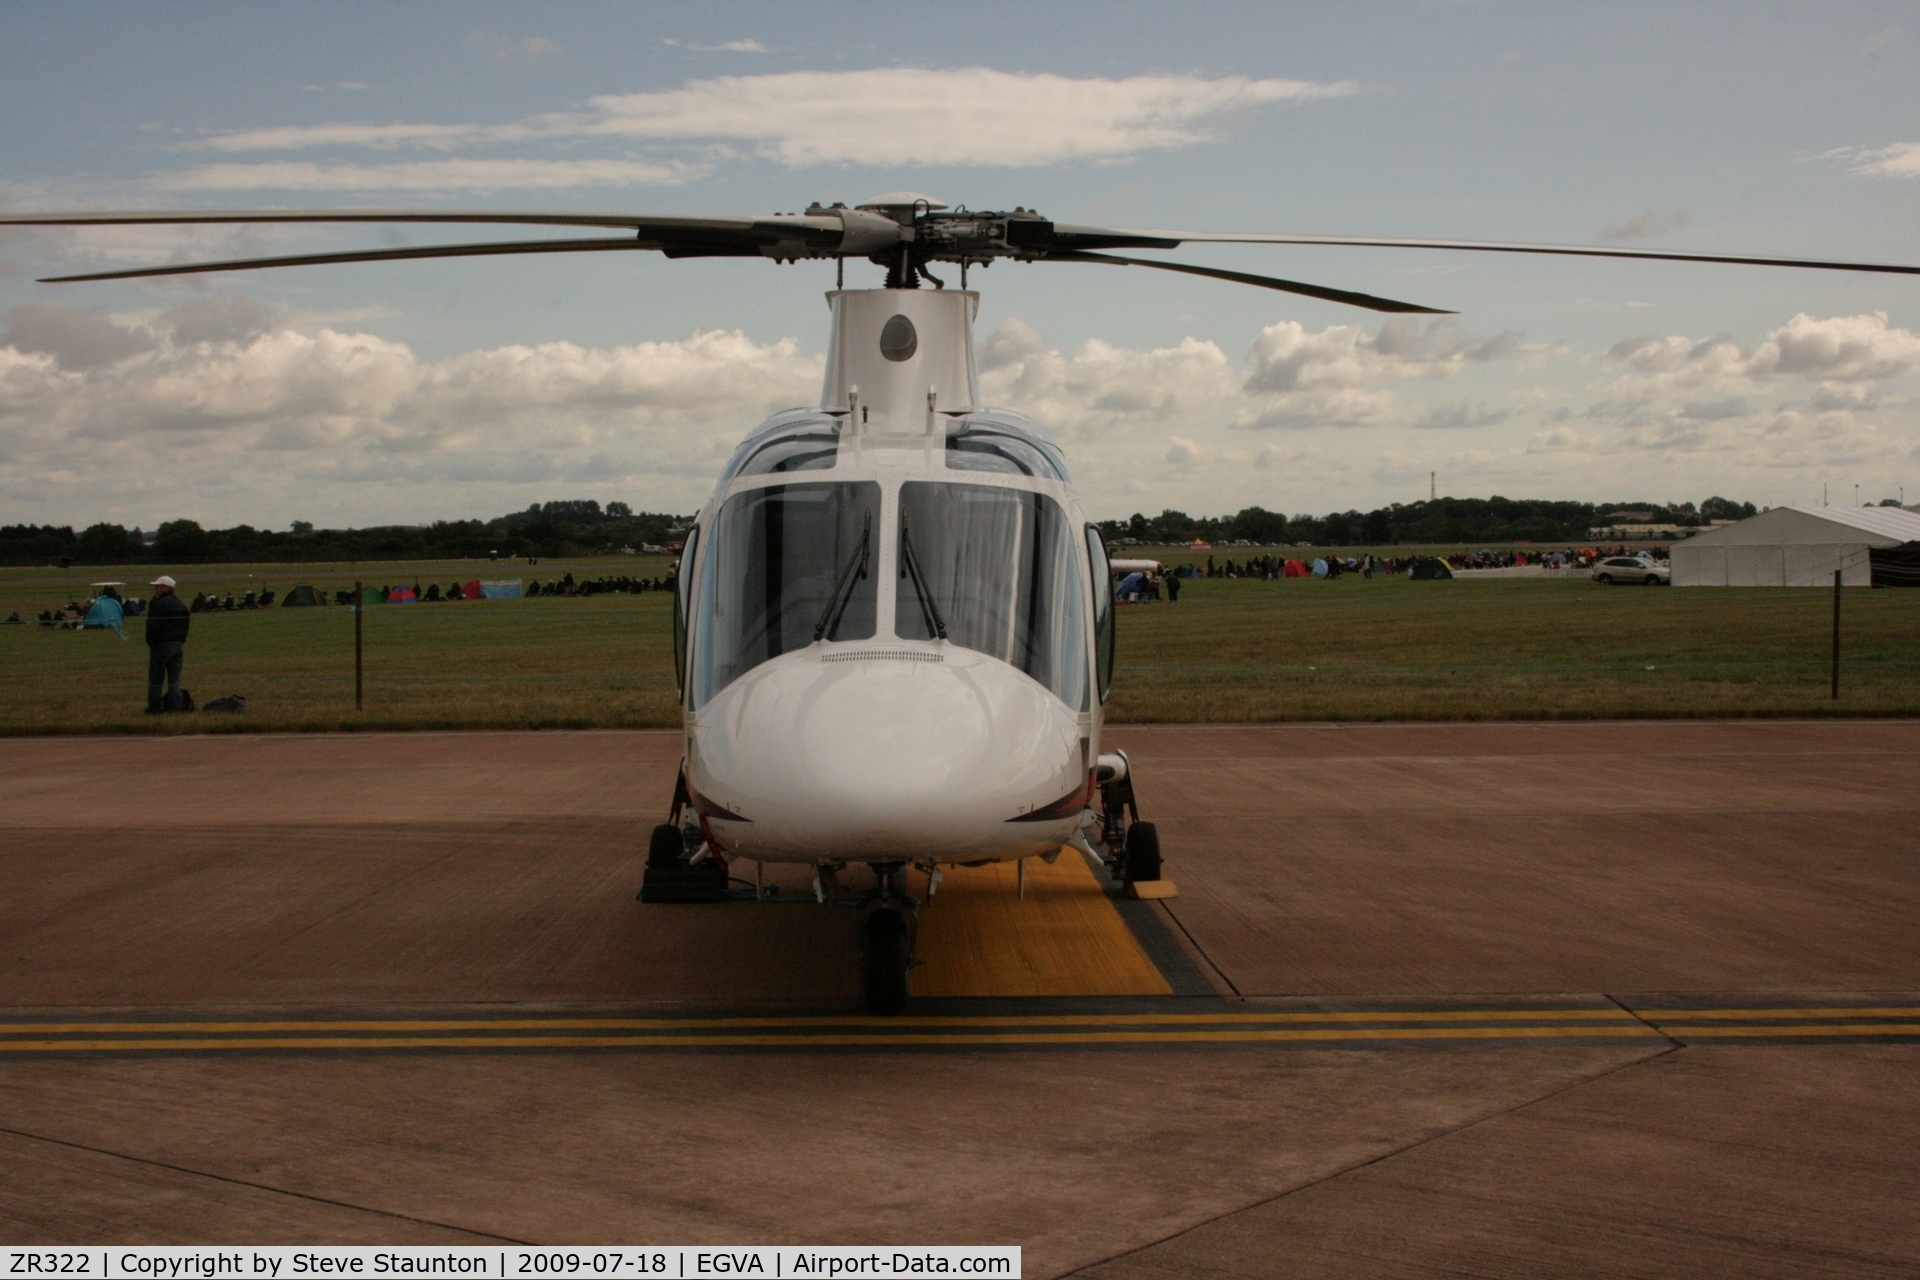 ZR322, 2006 Agusta A-109E Power C/N 11664, Taken at the Royal International Air Tattoo 2009